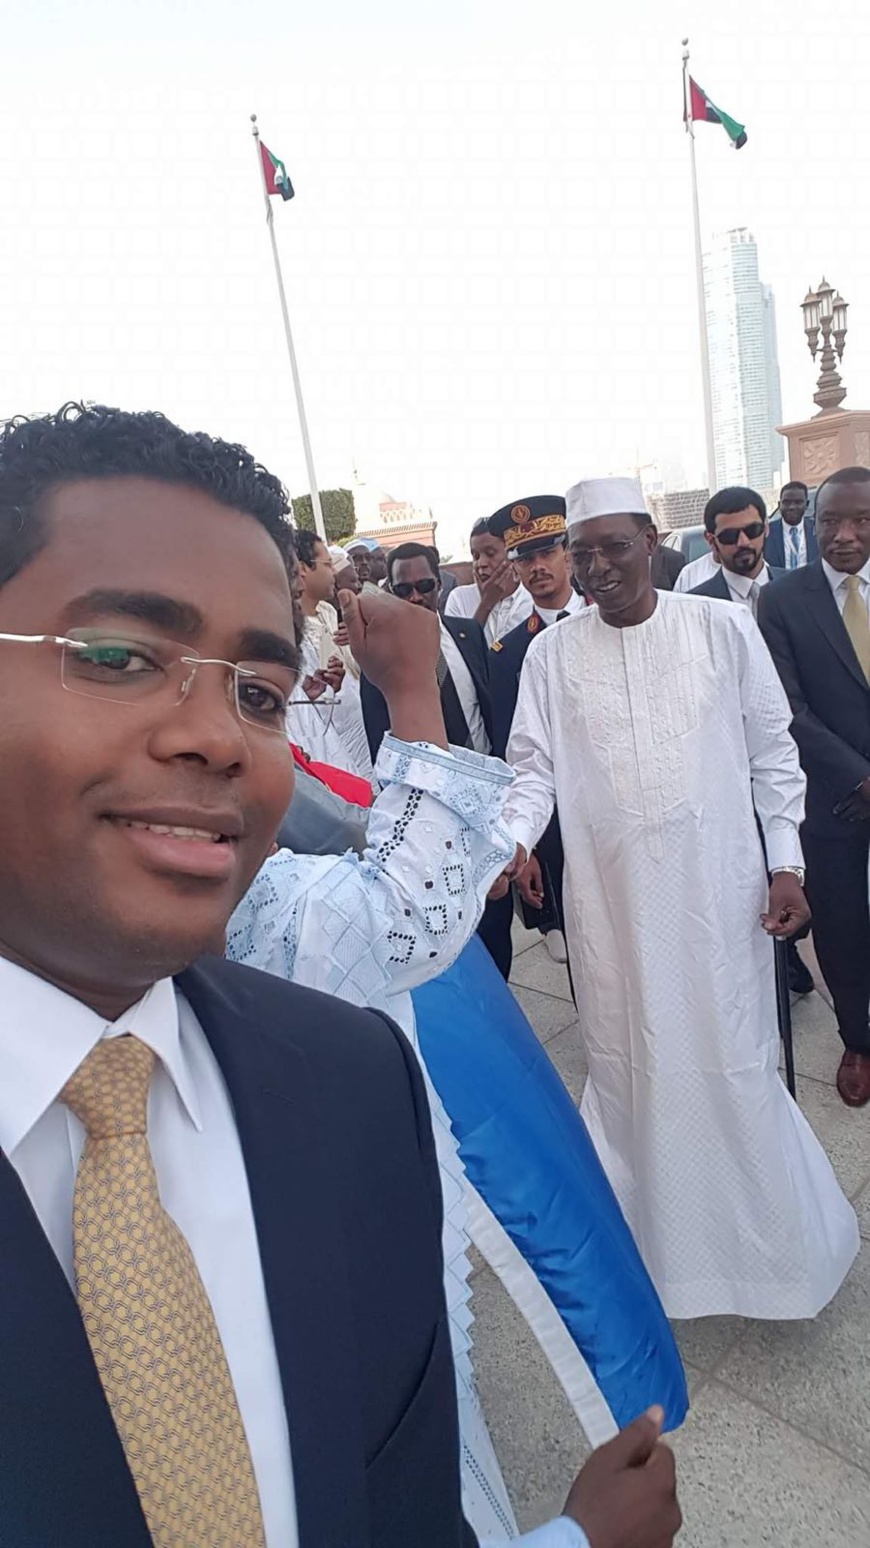  Emirats arabes unis: Le Président tchadien poursuit sa visite